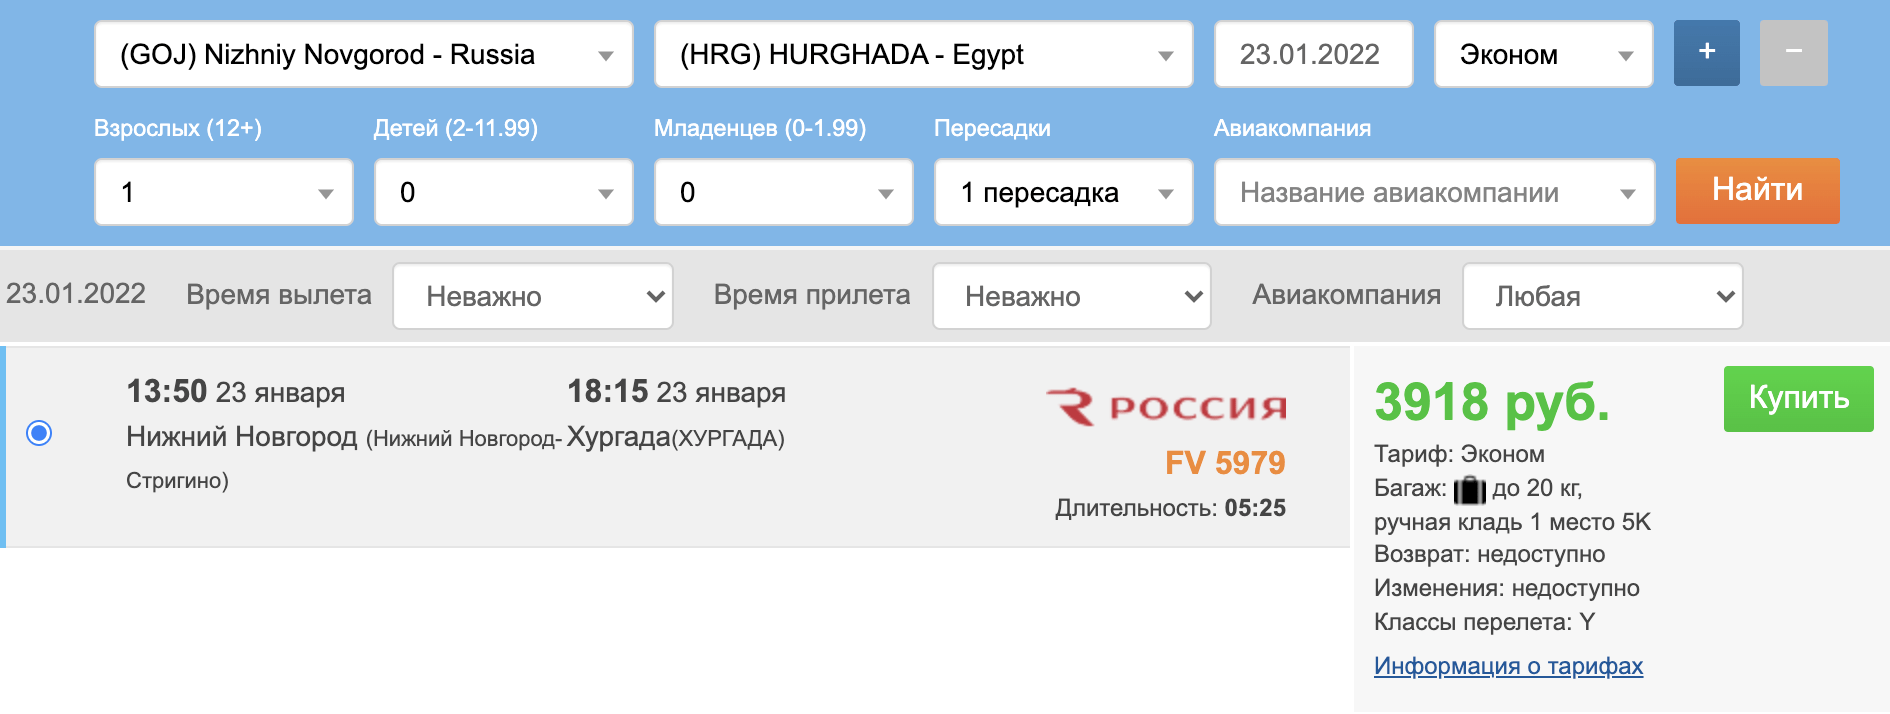 Muito barato: charter de Nizhny Novgorod para o Egito (Hurghada) por 8500₽ ida e volta